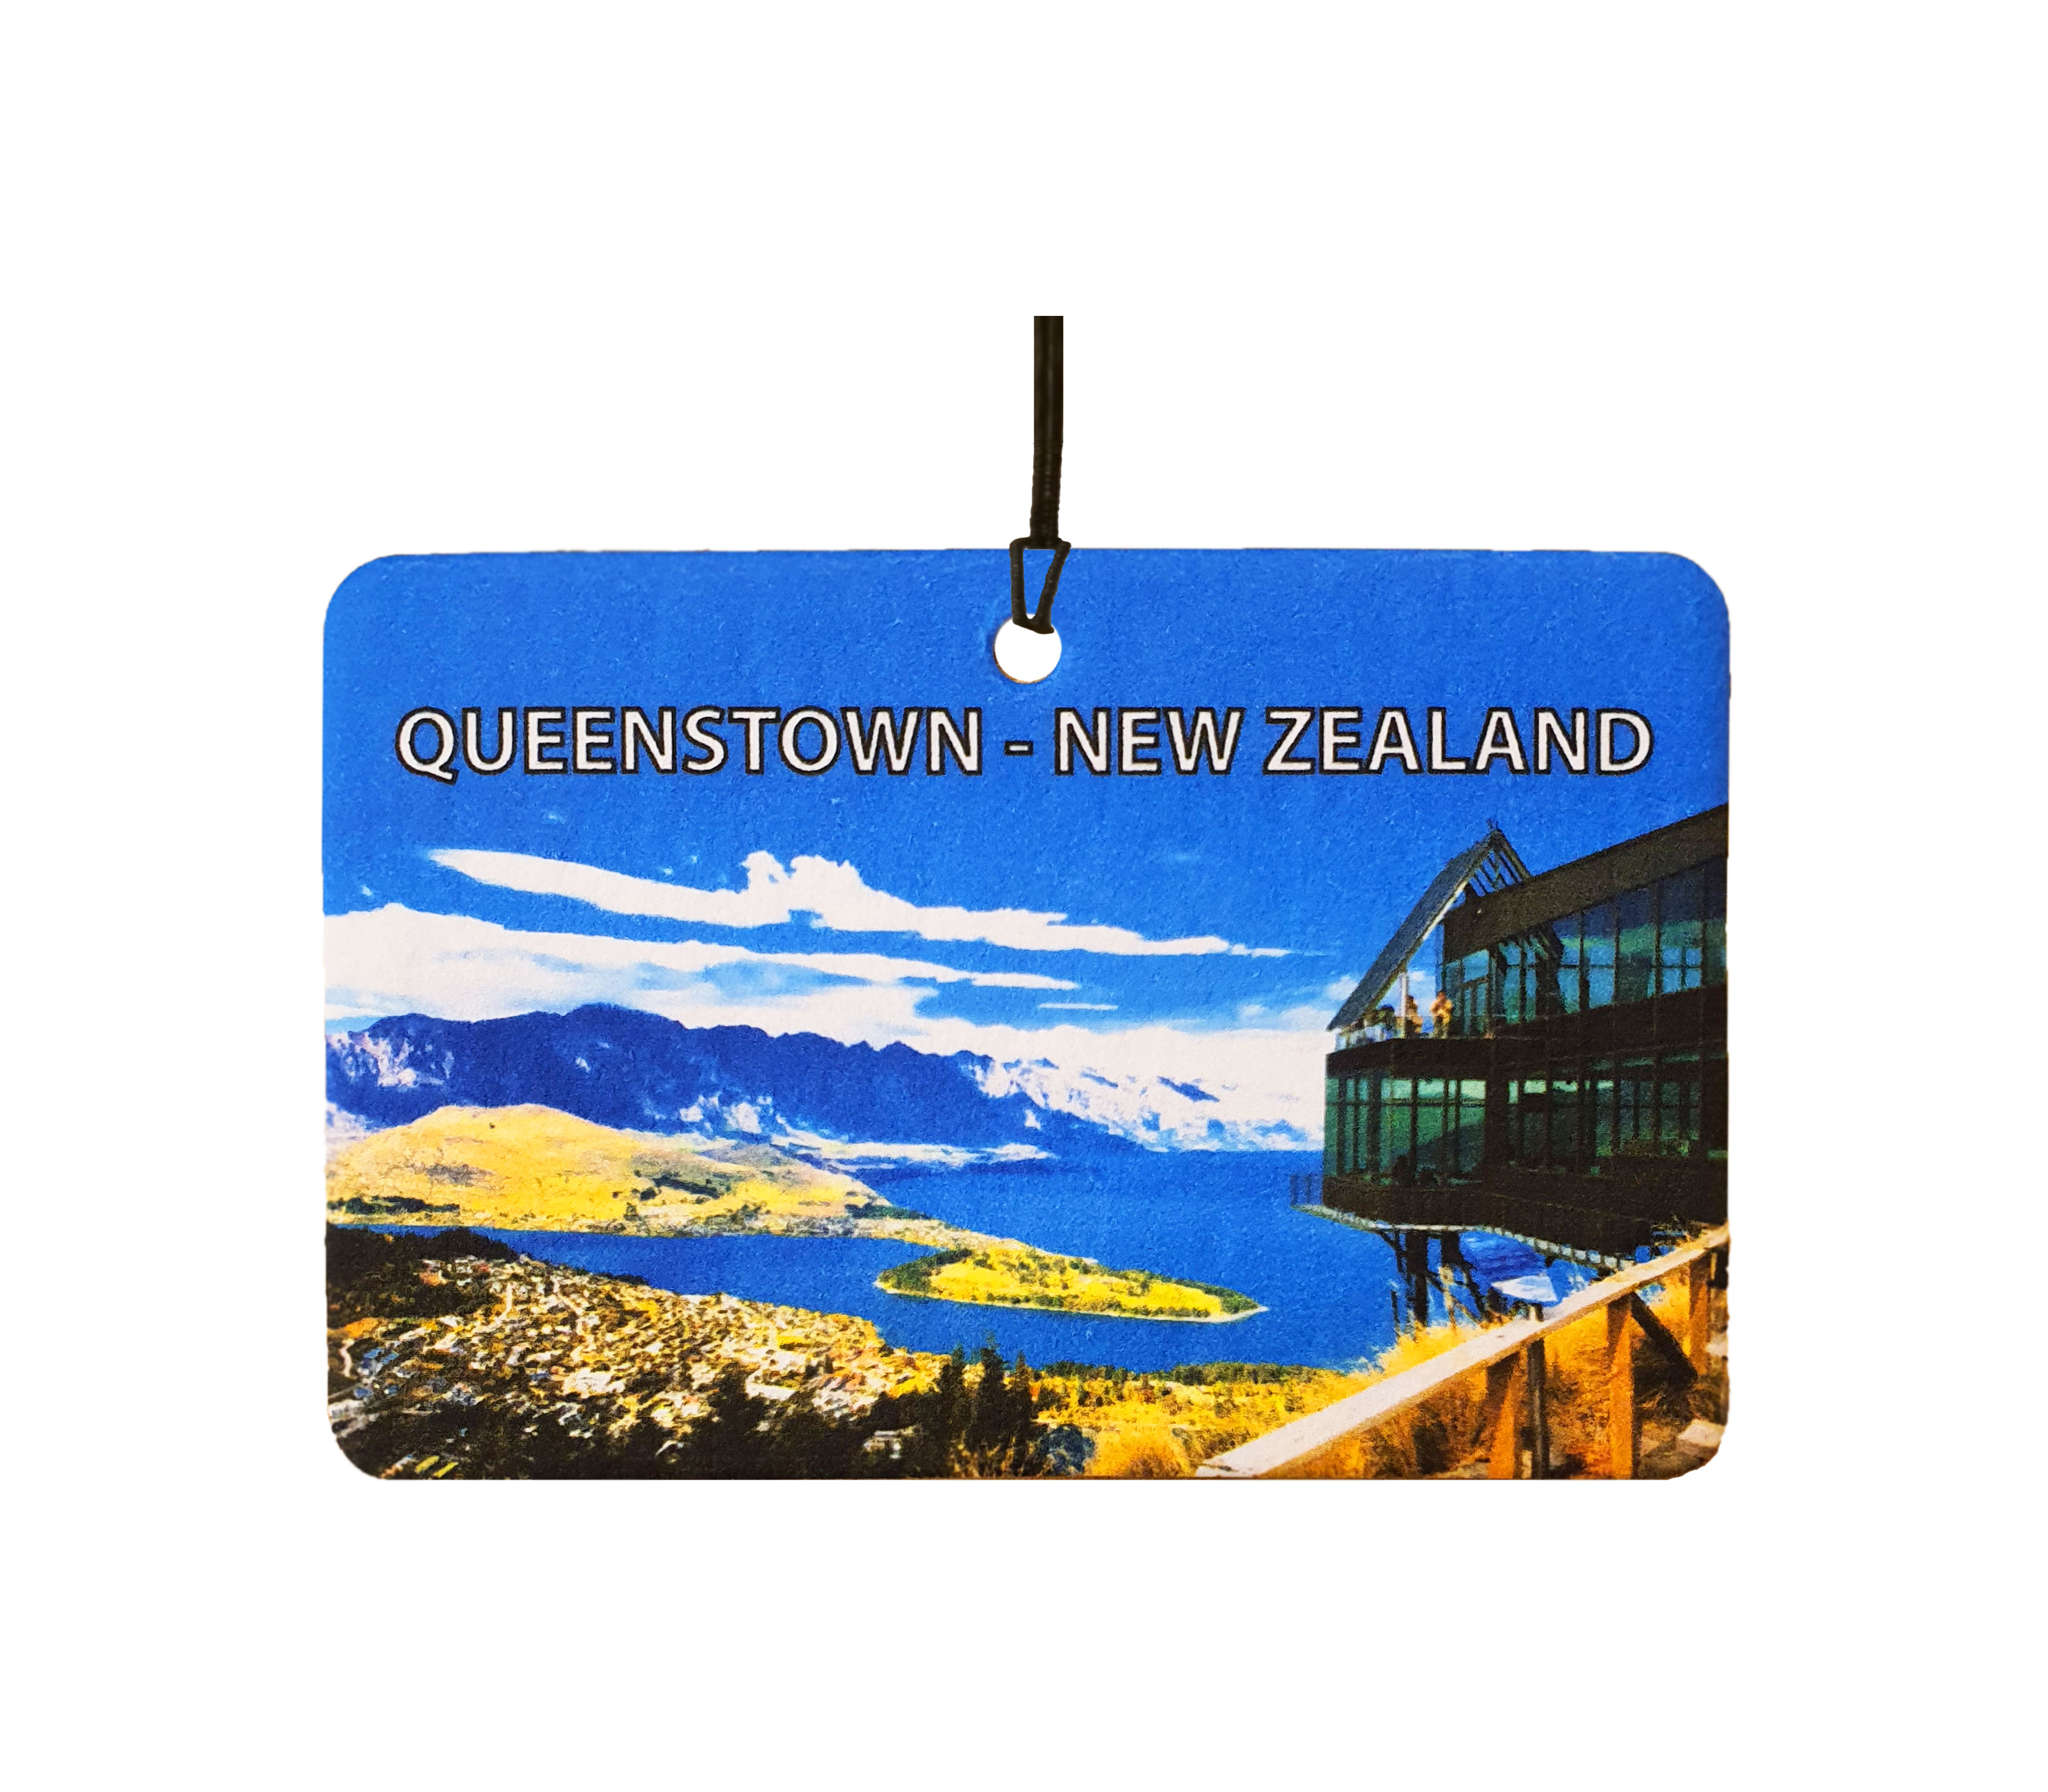 Queenstown - New Zealand